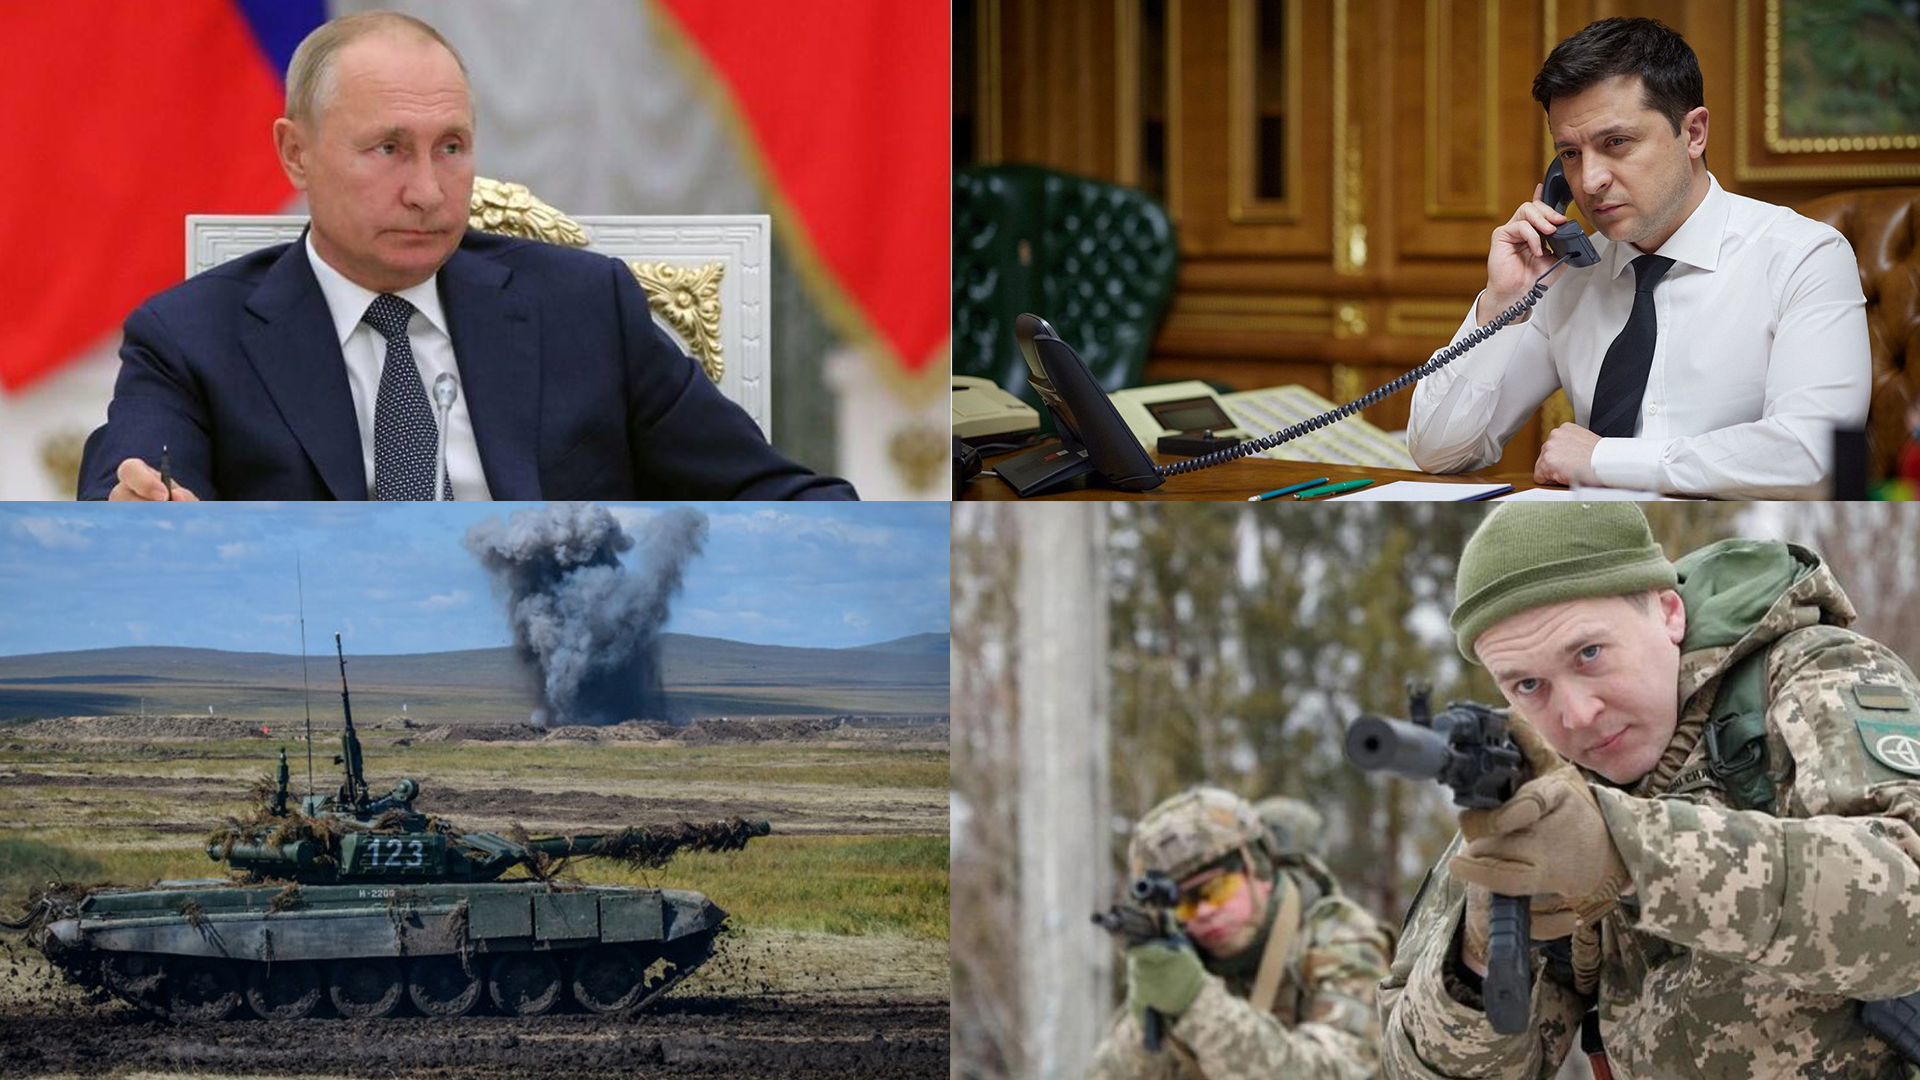 Ռուս-ուկրաինական հակամարտություն. ինչից սկսվեց ու ուր հասավ